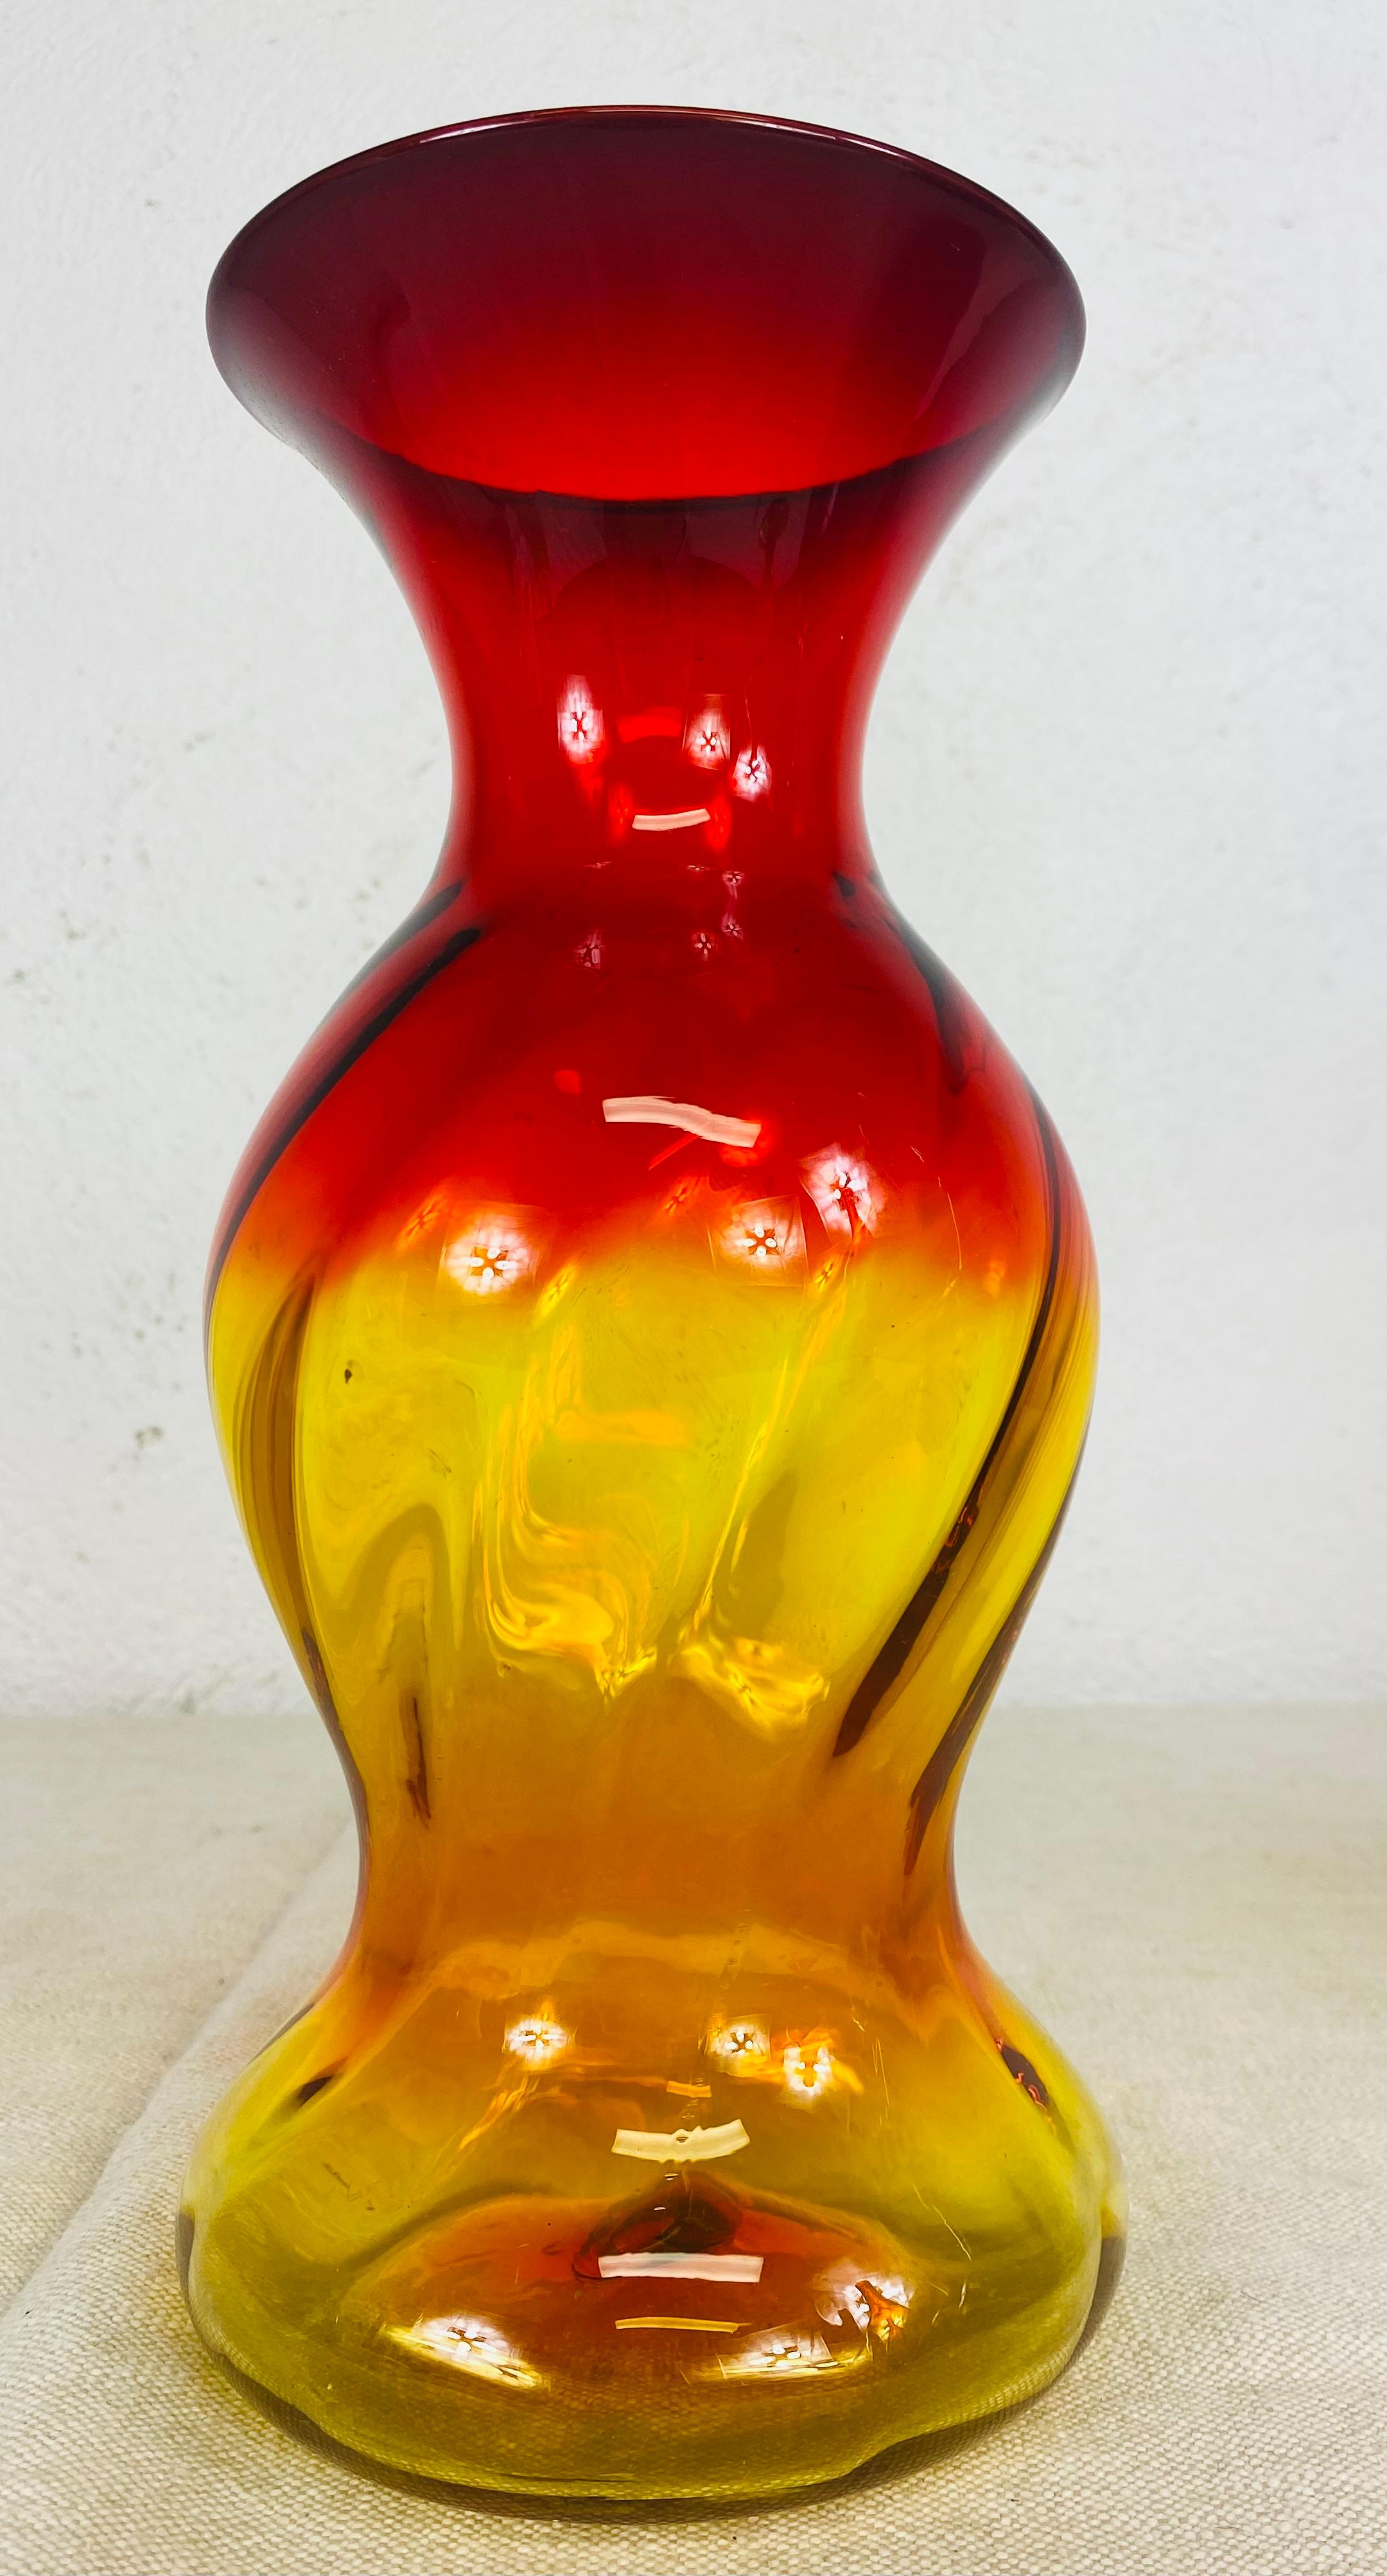 Dies ist ein Original Blenko mundgeblasenes Glas mit identifiziertem Pontil unten, um 1965 von Wayne Husted; Ambarina mit orangefarbenen Highlights. Die anderen gezeigten Gläser dienen nur als Anschauungsmaterial und können bei Interesse separat